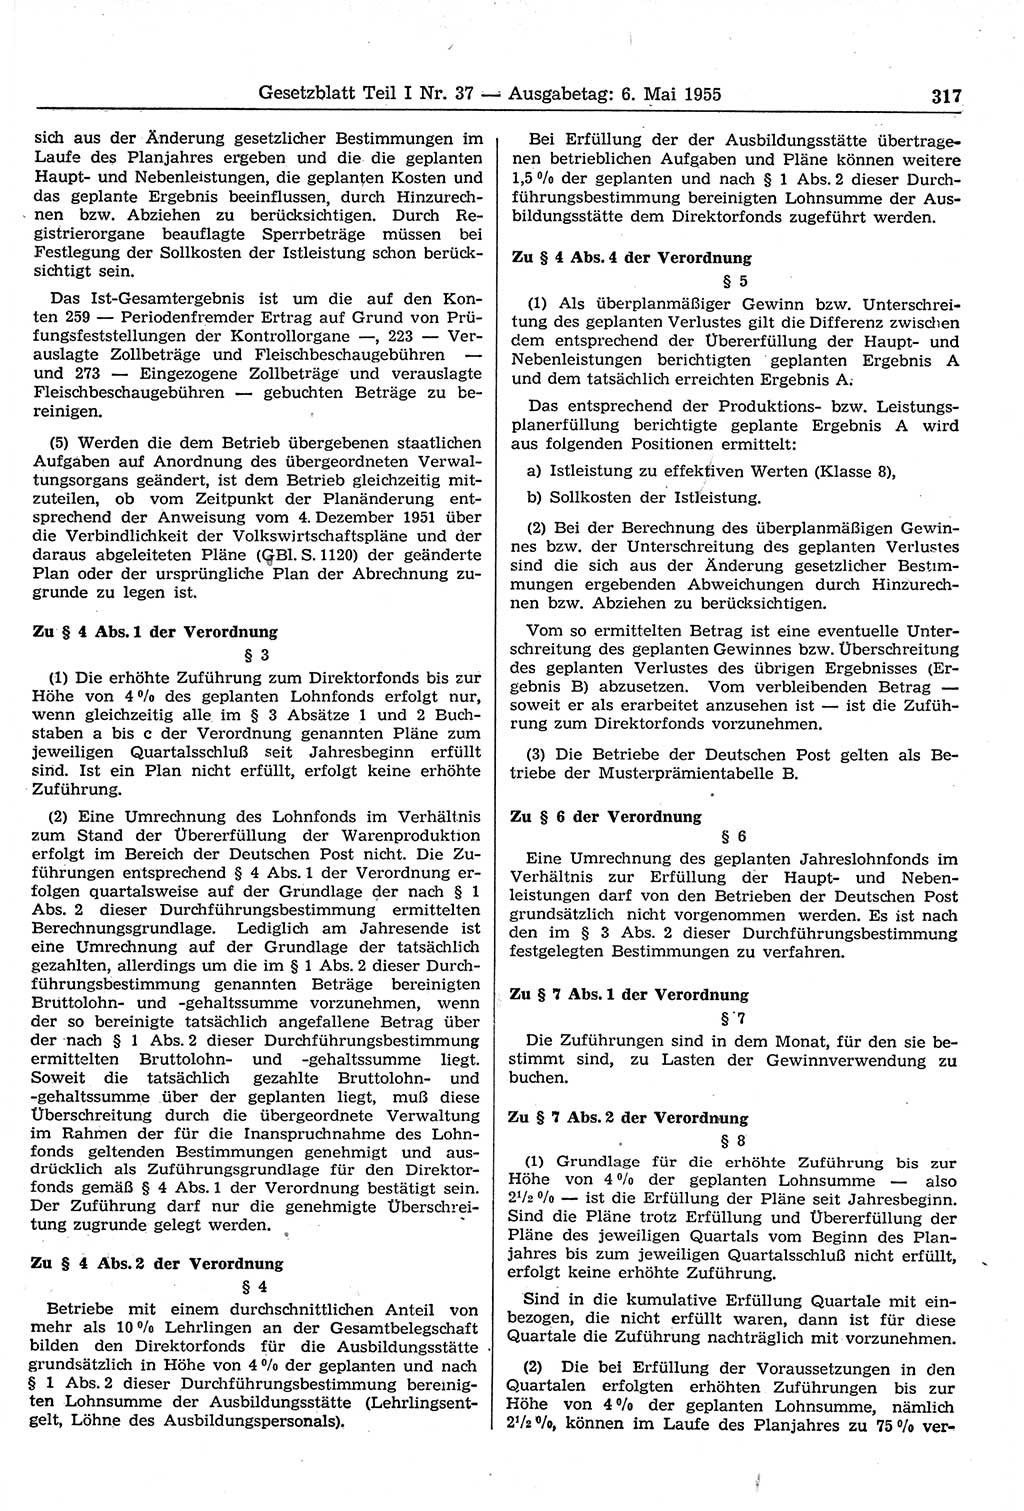 Gesetzblatt (GBl.) der Deutschen Demokratischen Republik (DDR) Teil Ⅰ 1955, Seite 317 (GBl. DDR Ⅰ 1955, S. 317)